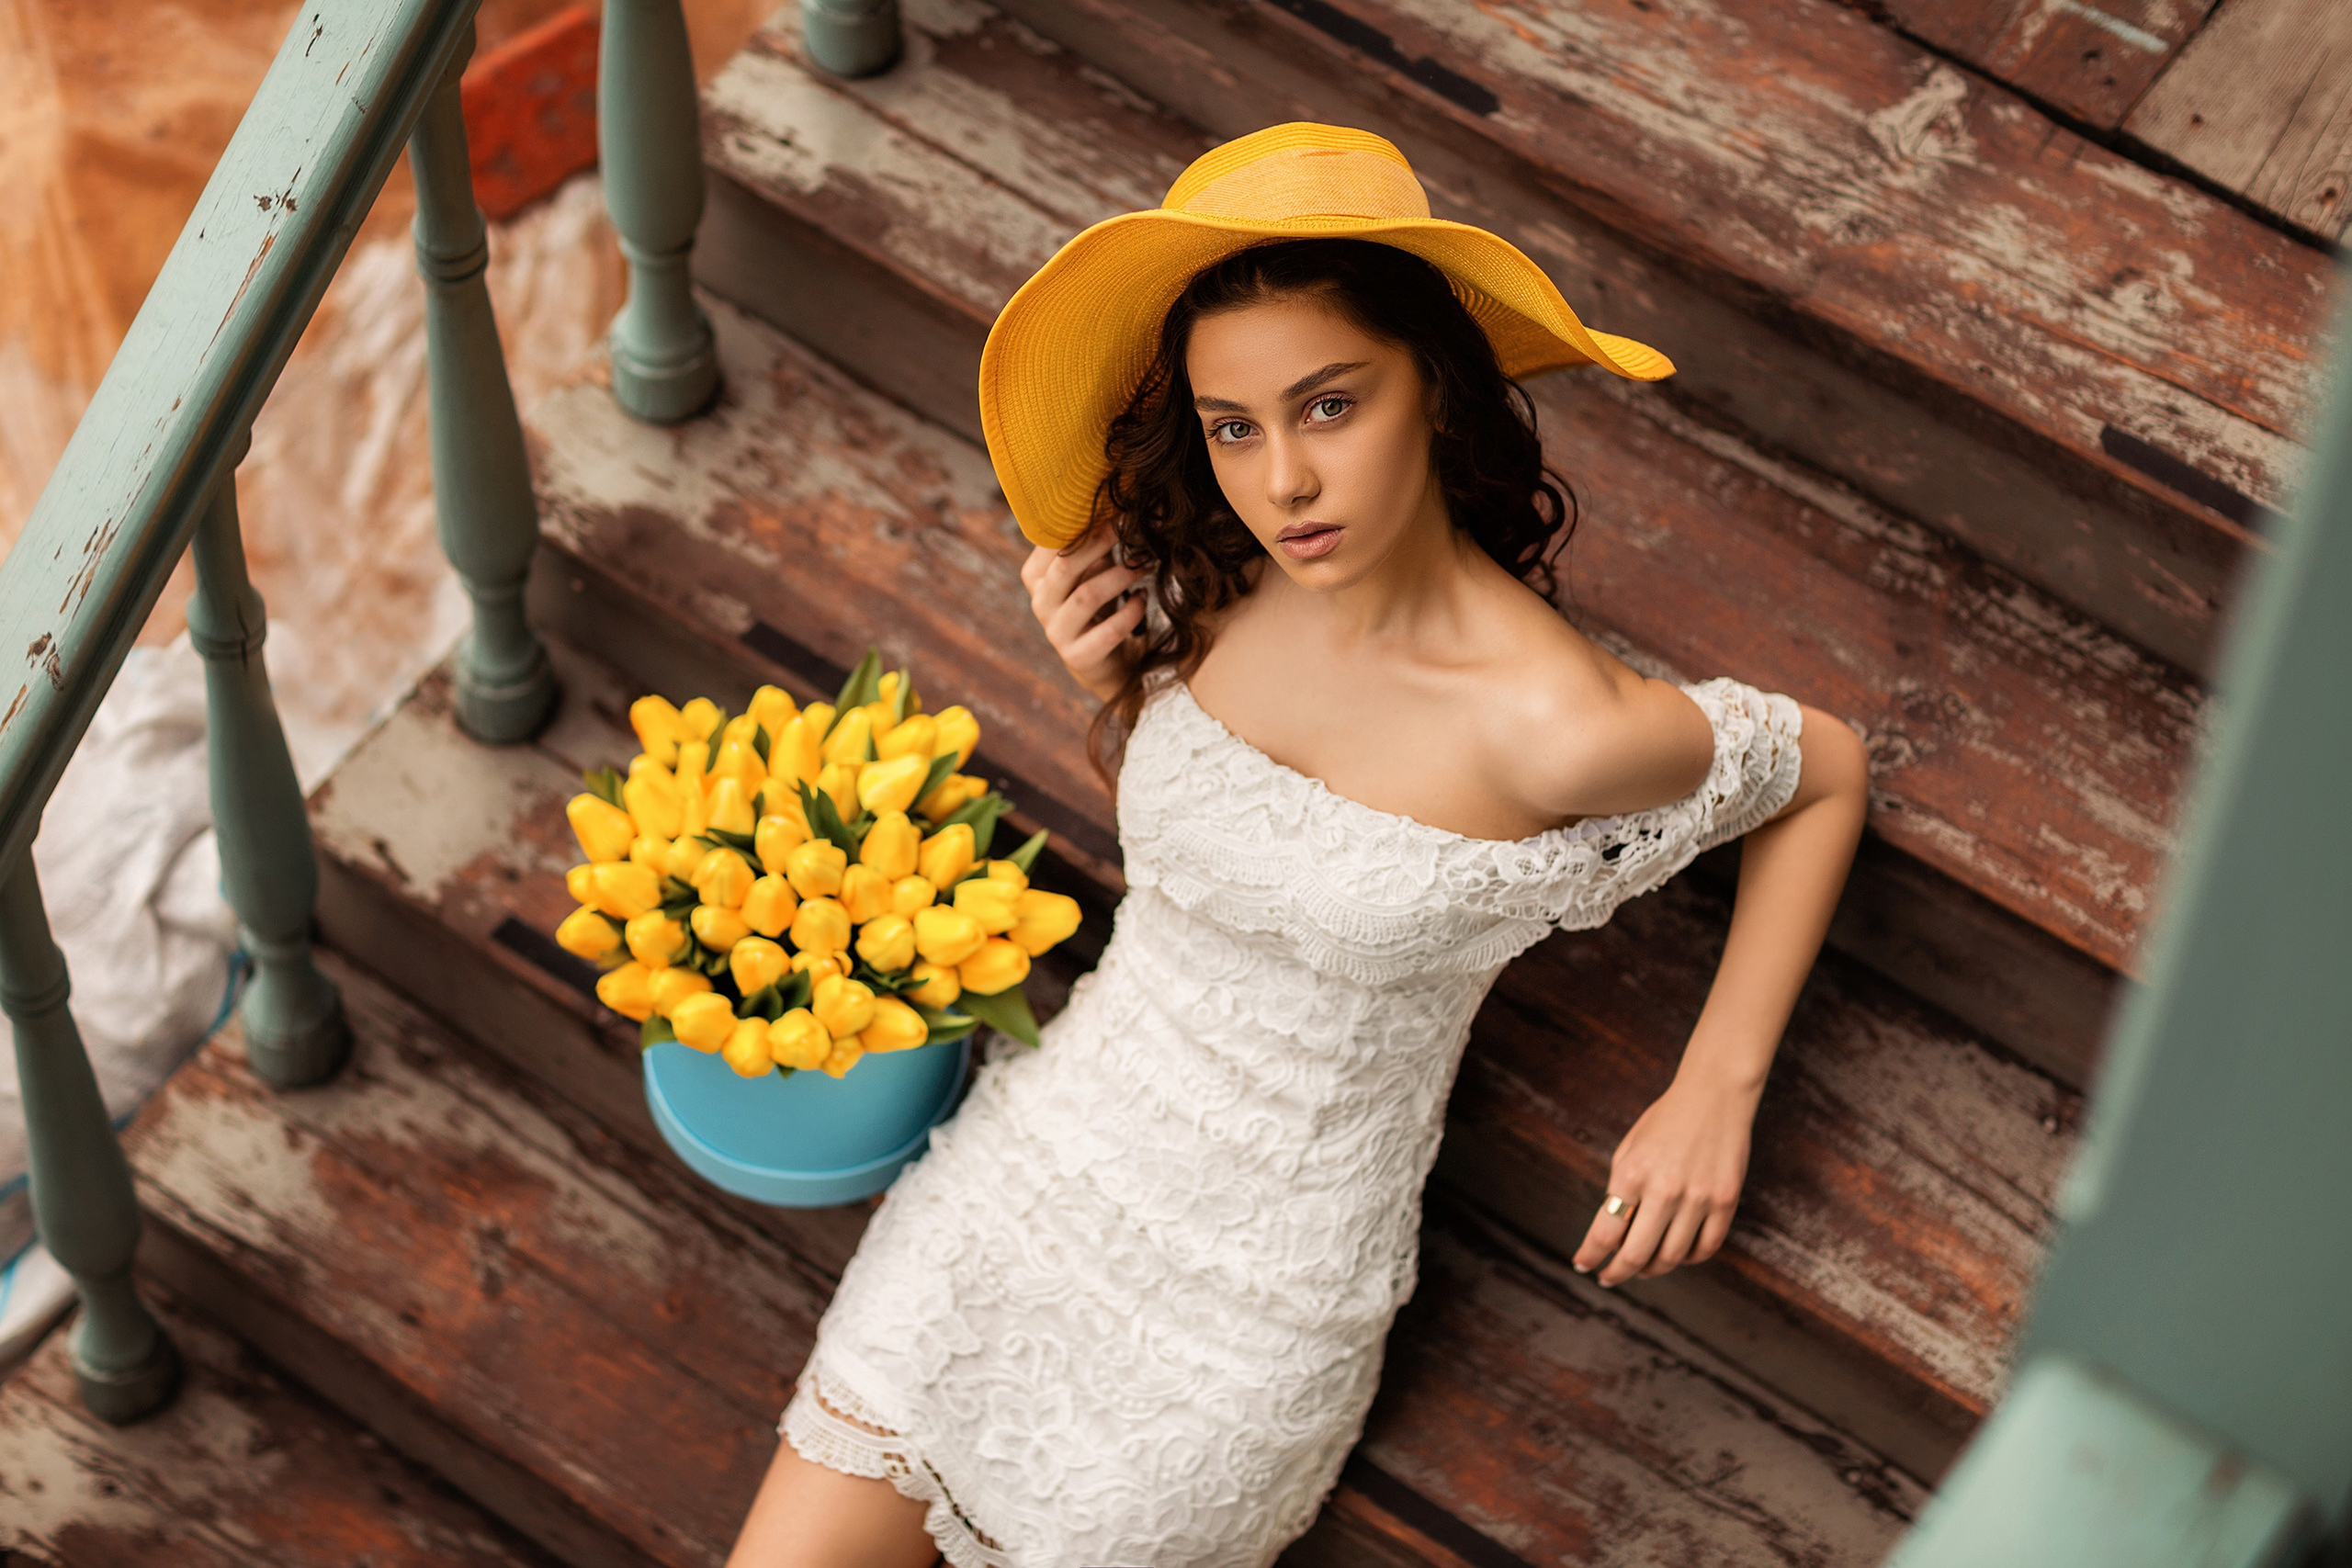 Бесплатное фото Девушка в белом платье с желтой шляпой на голове сидит на ступеньках с букетом желтых тюльпанов